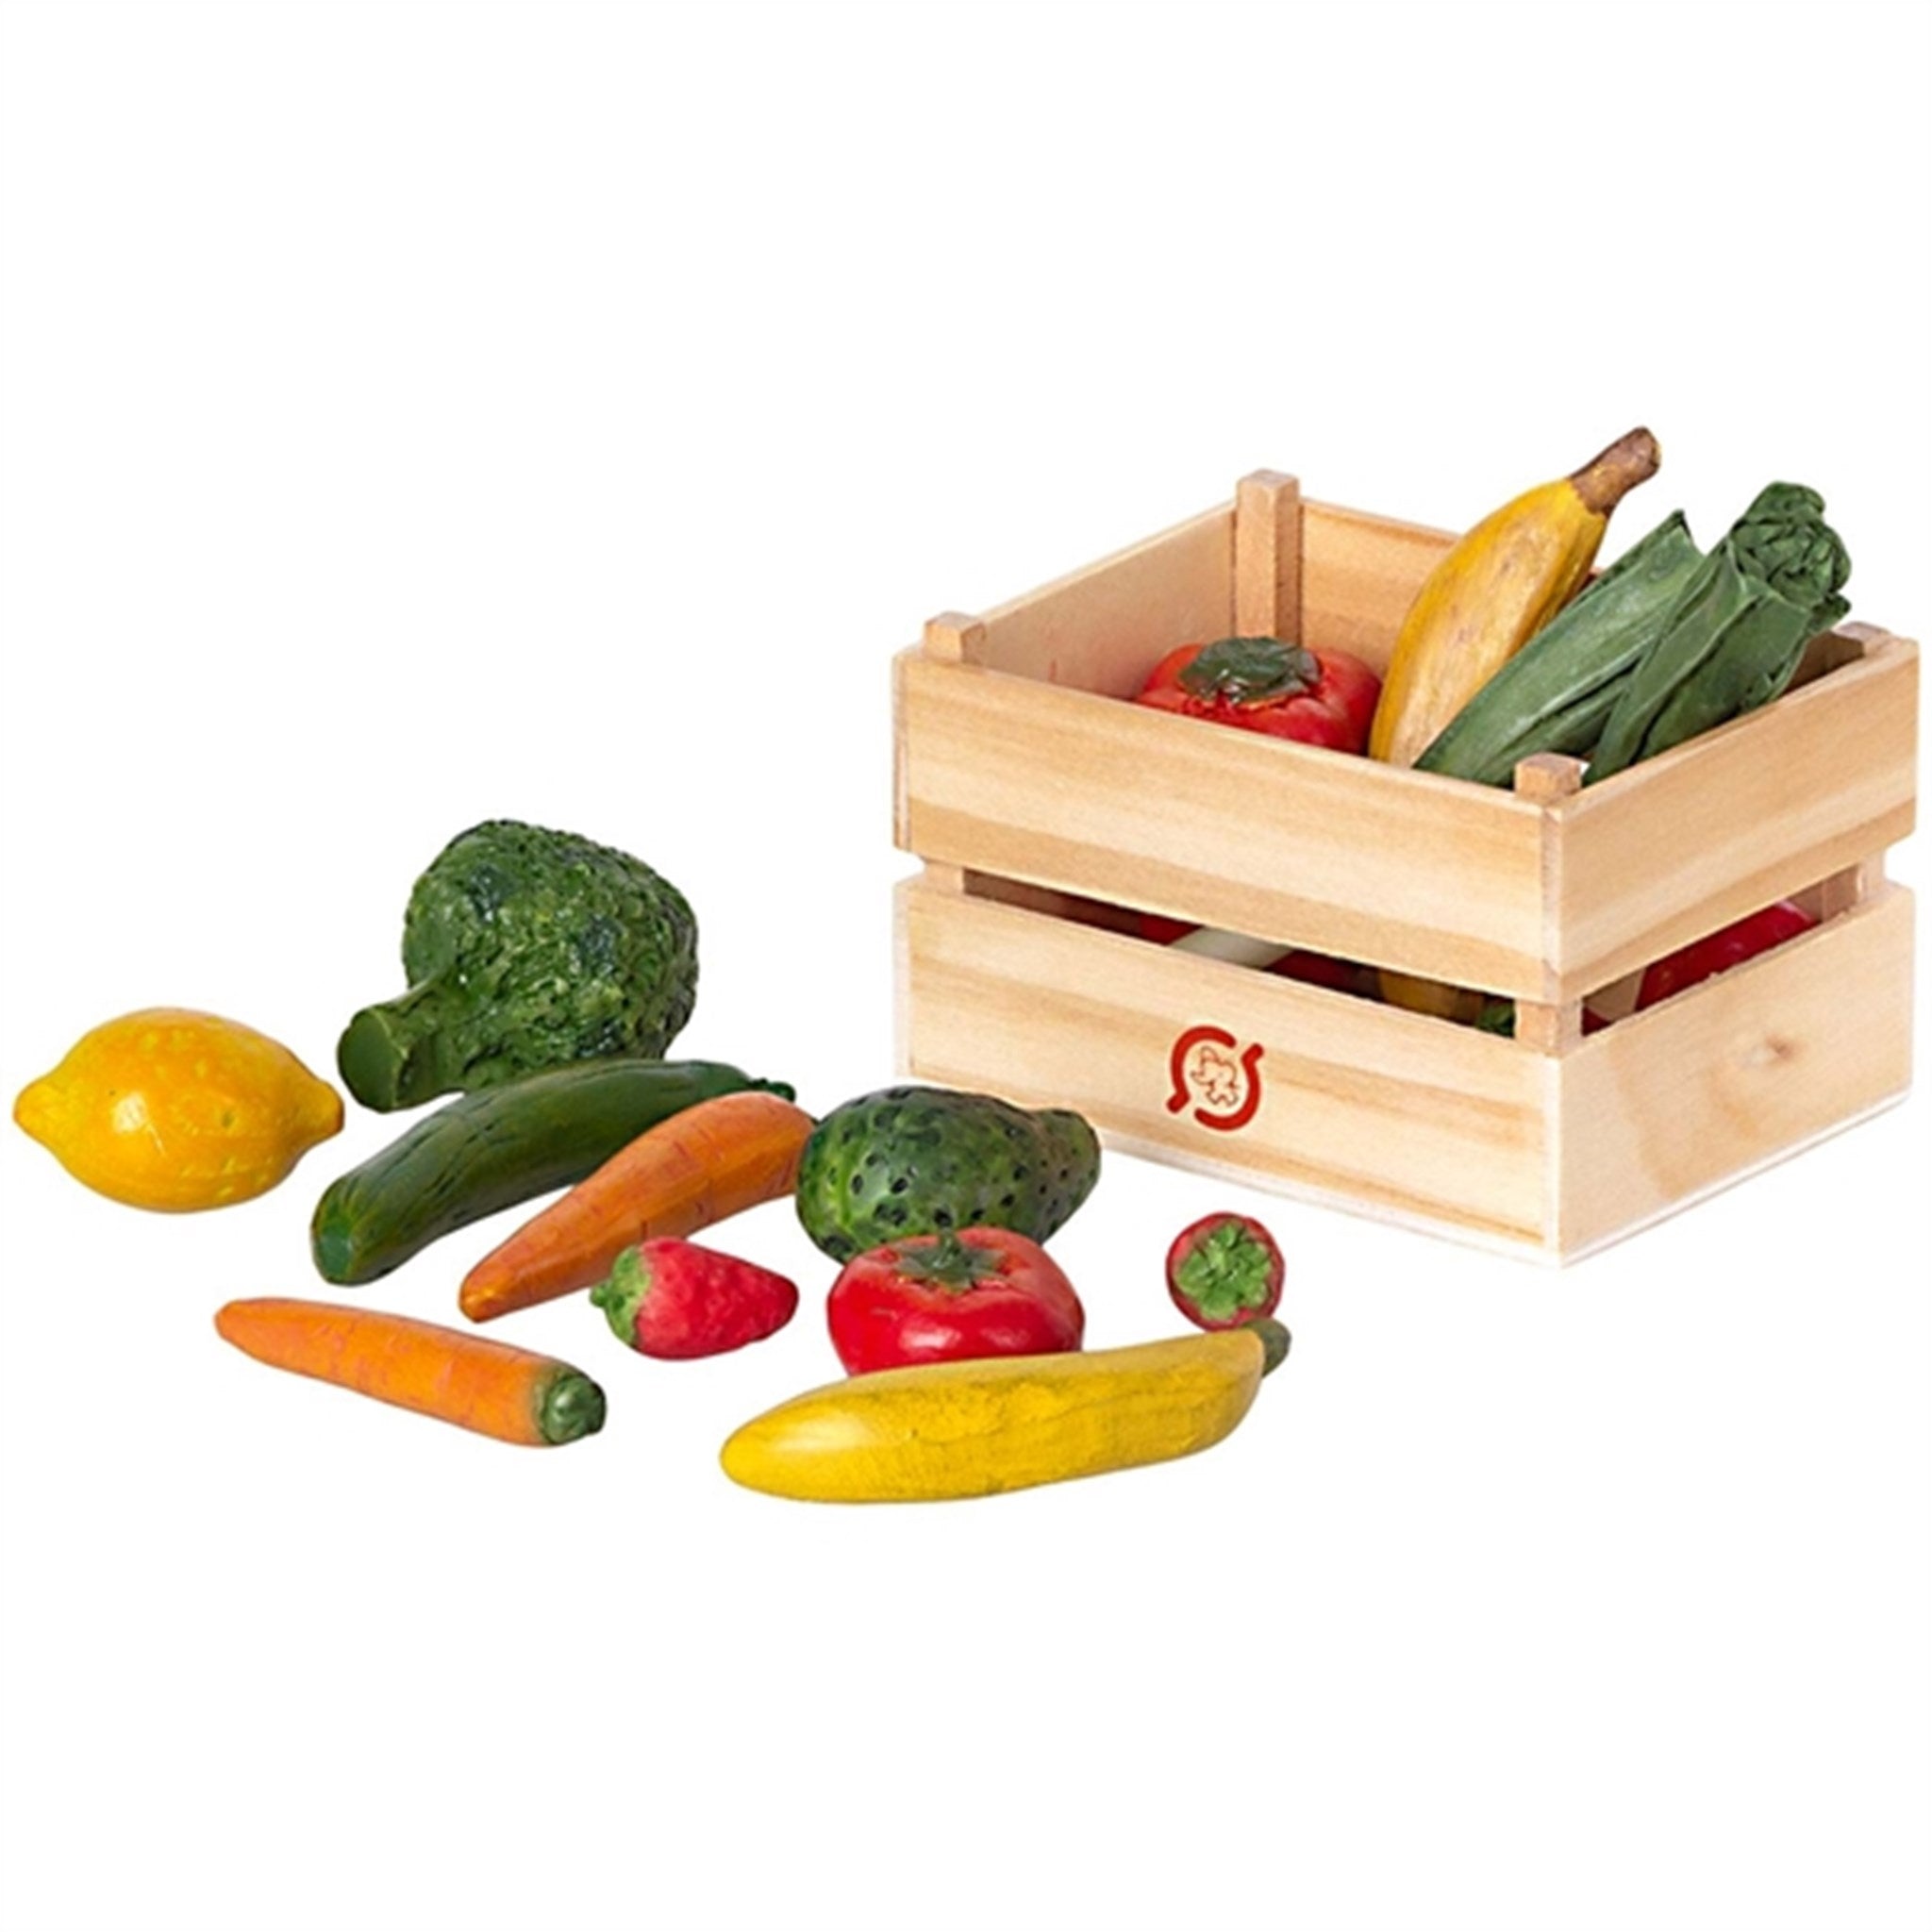 Maileg Veggies And Fruits Box 2